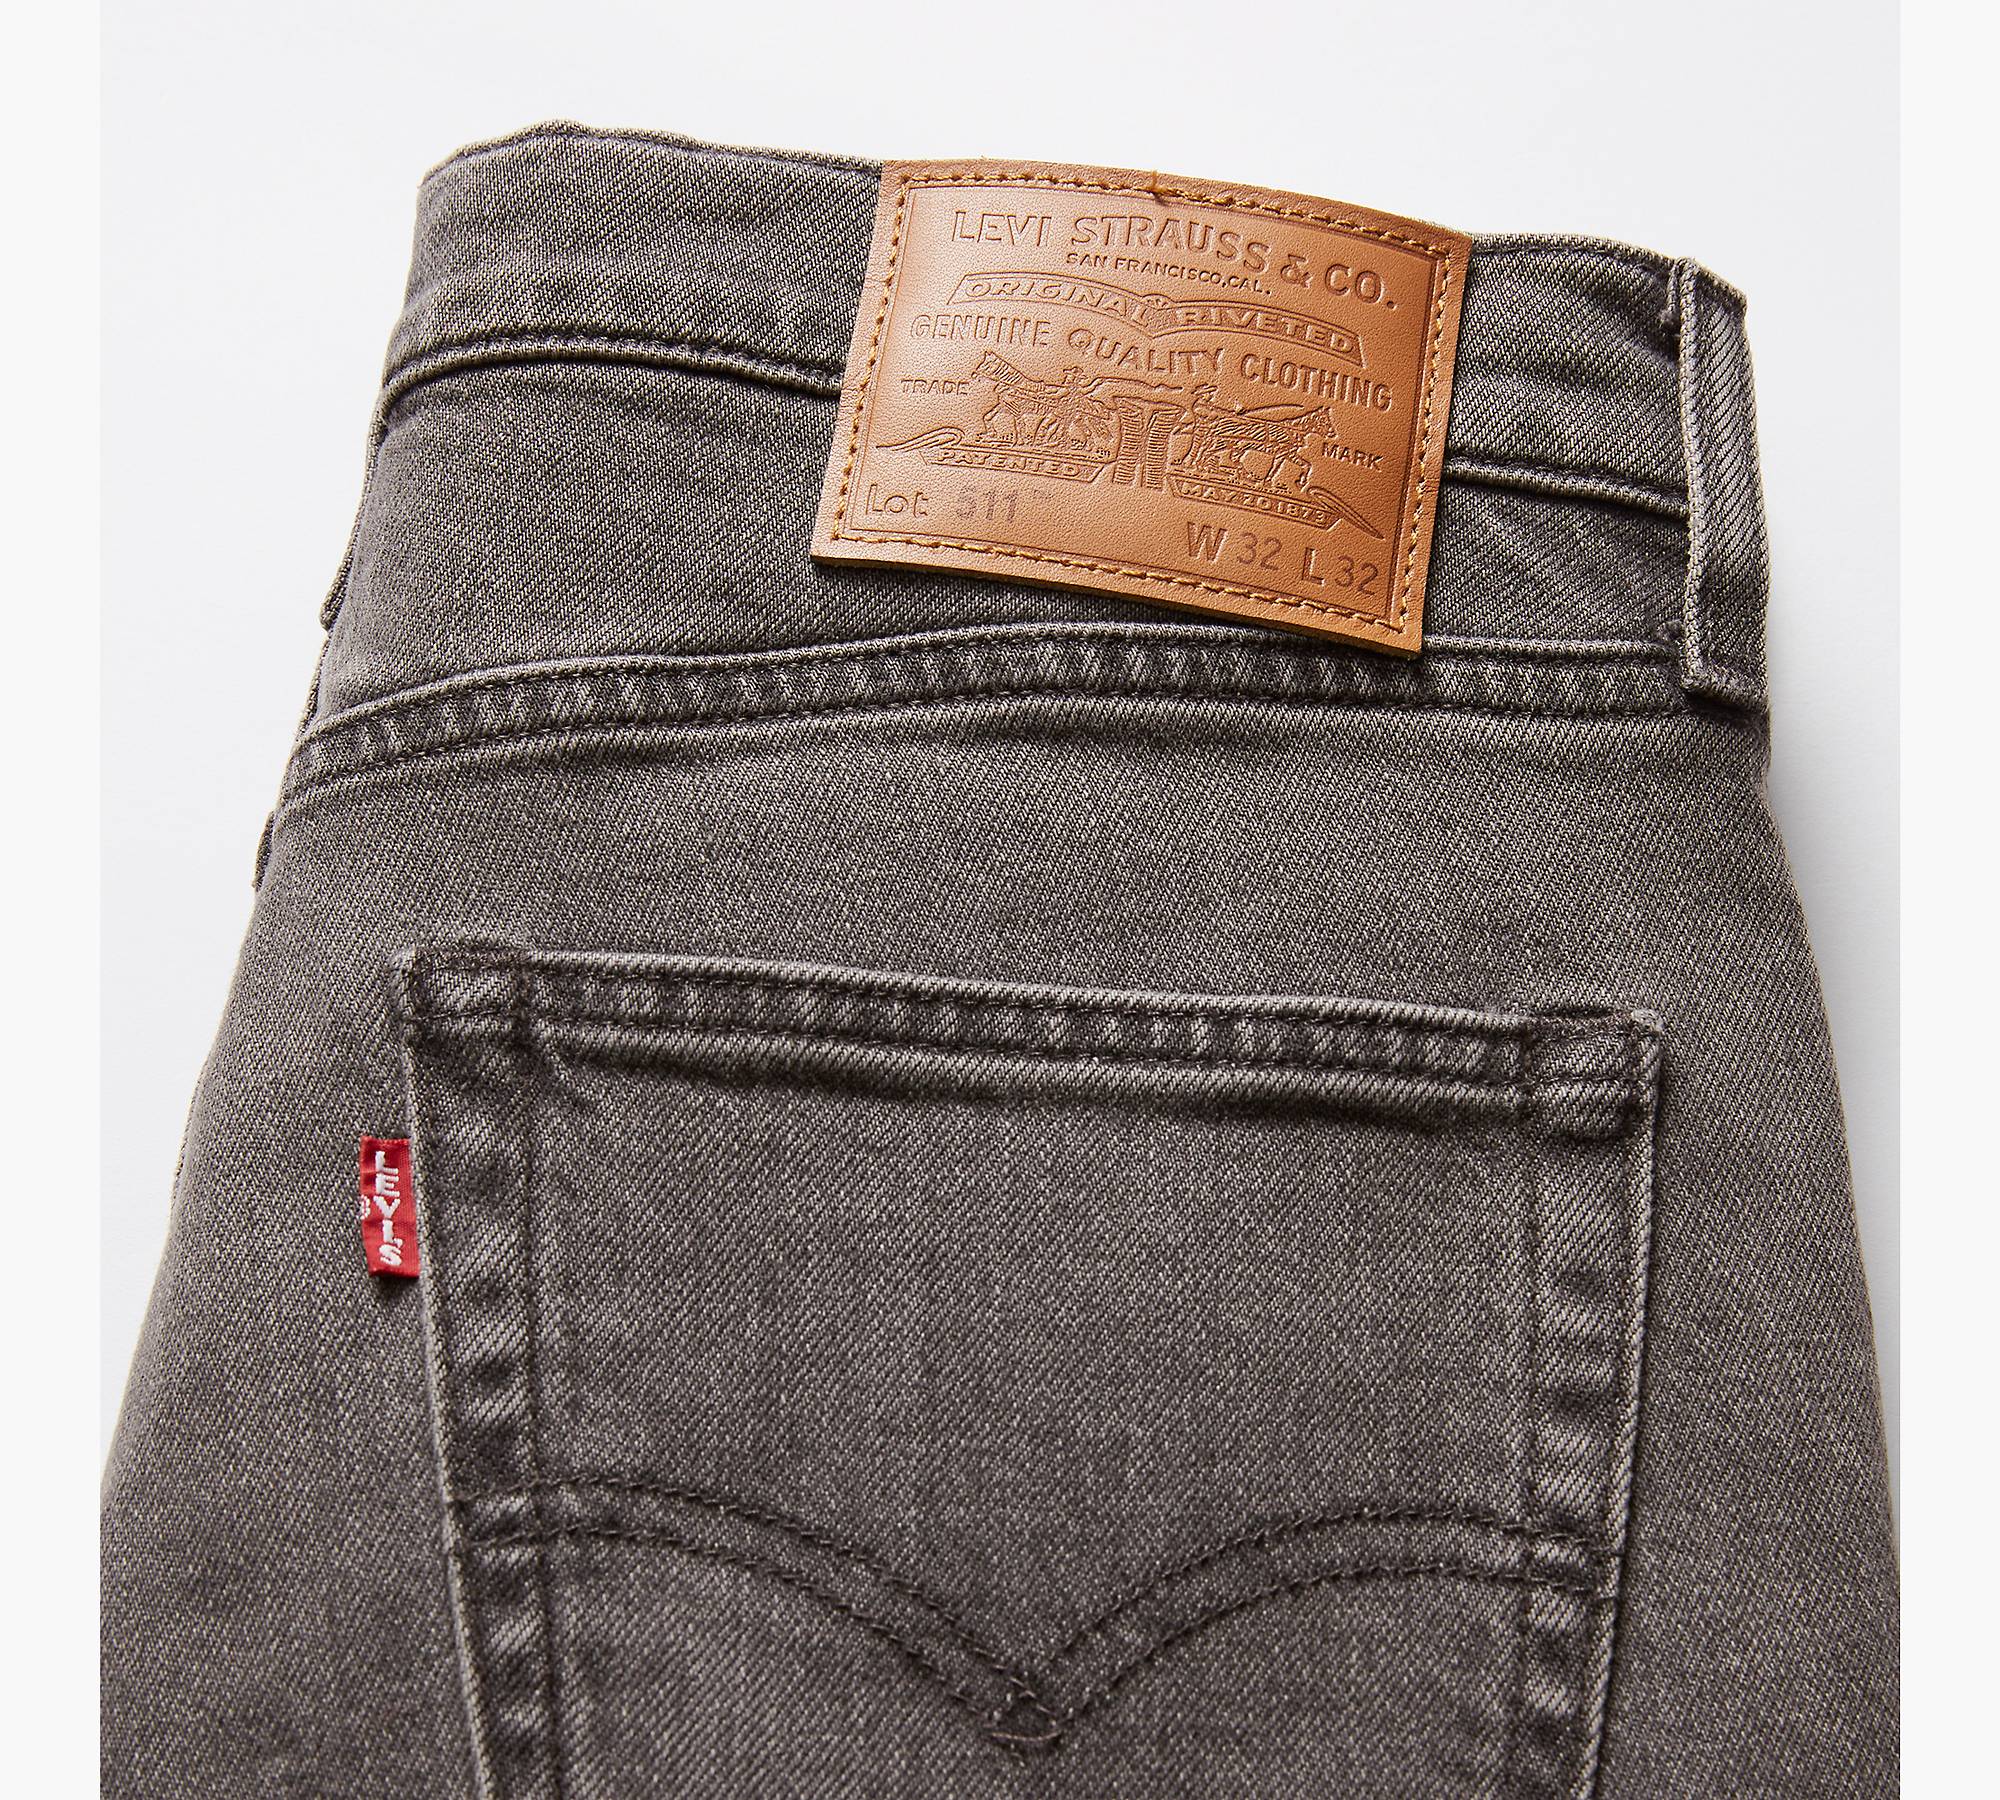 511™ Slim Fit Authentic Soft Men's Jeans - Grey | Levi's® US